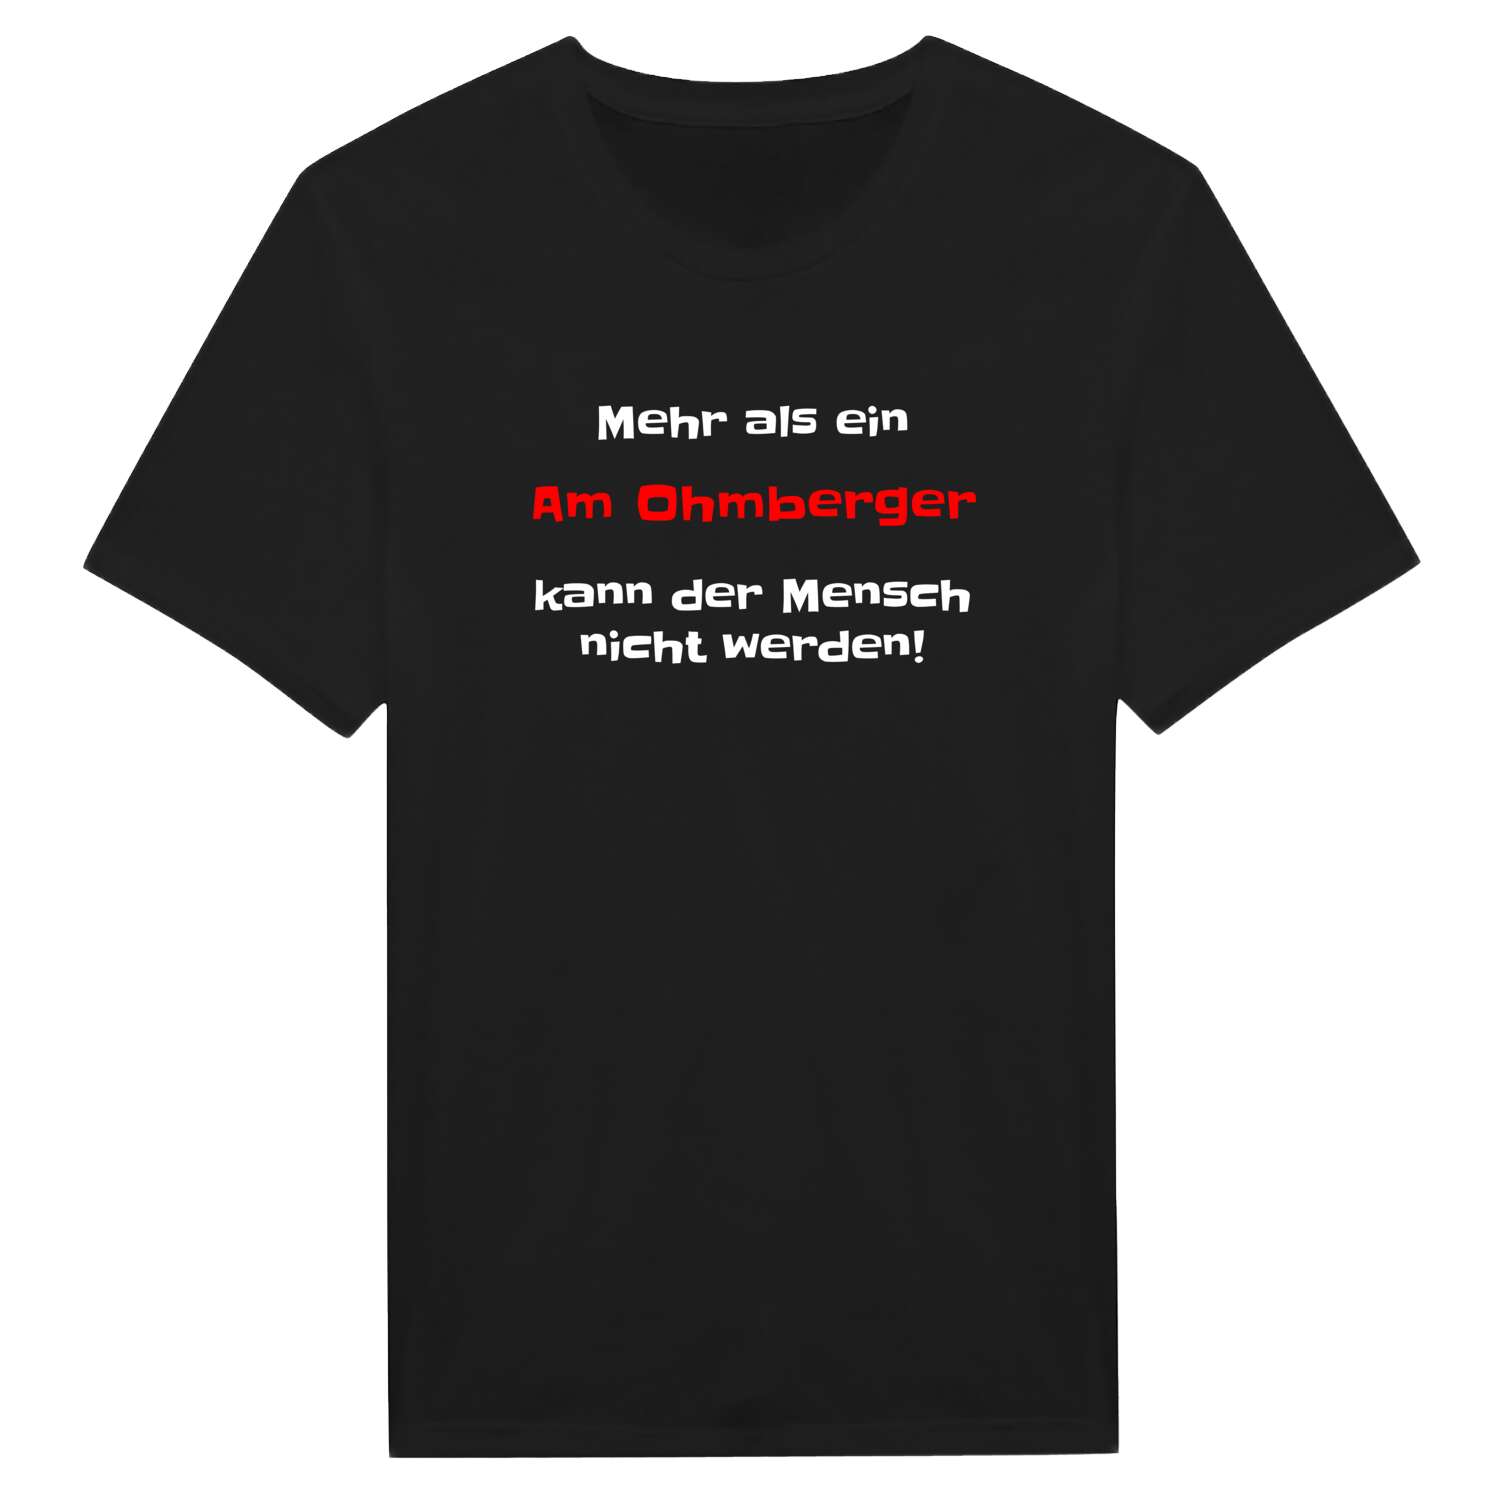 Am Ohmberg T-Shirt »Mehr als ein«